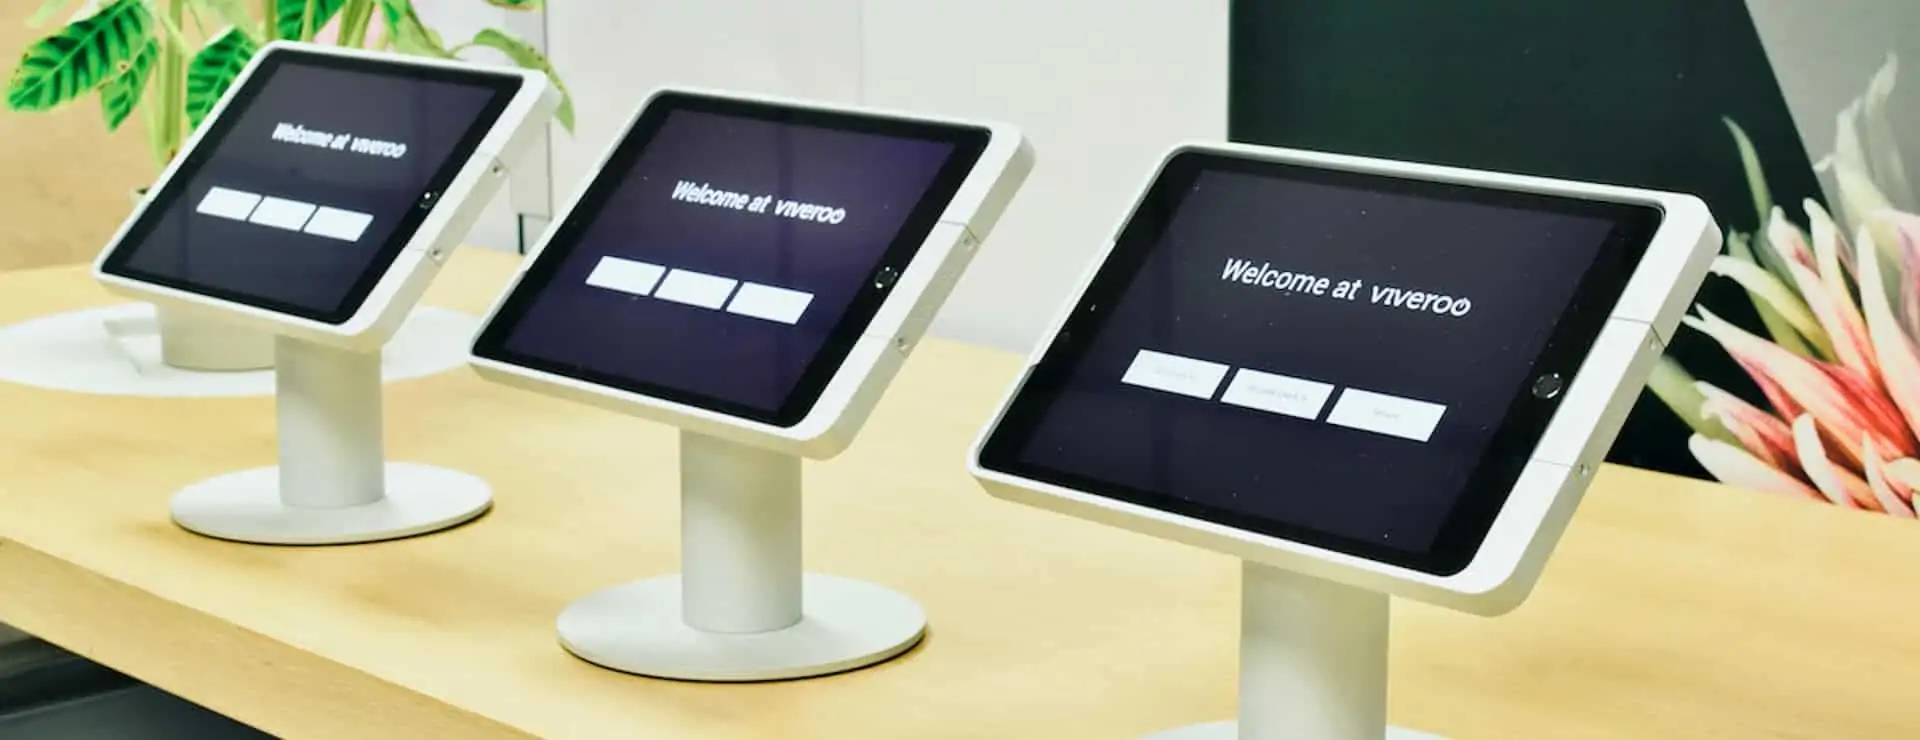 iPad kiosk Tischständer in Reihe. Die viveroo one kiosk iPad Halterung für den PoS.